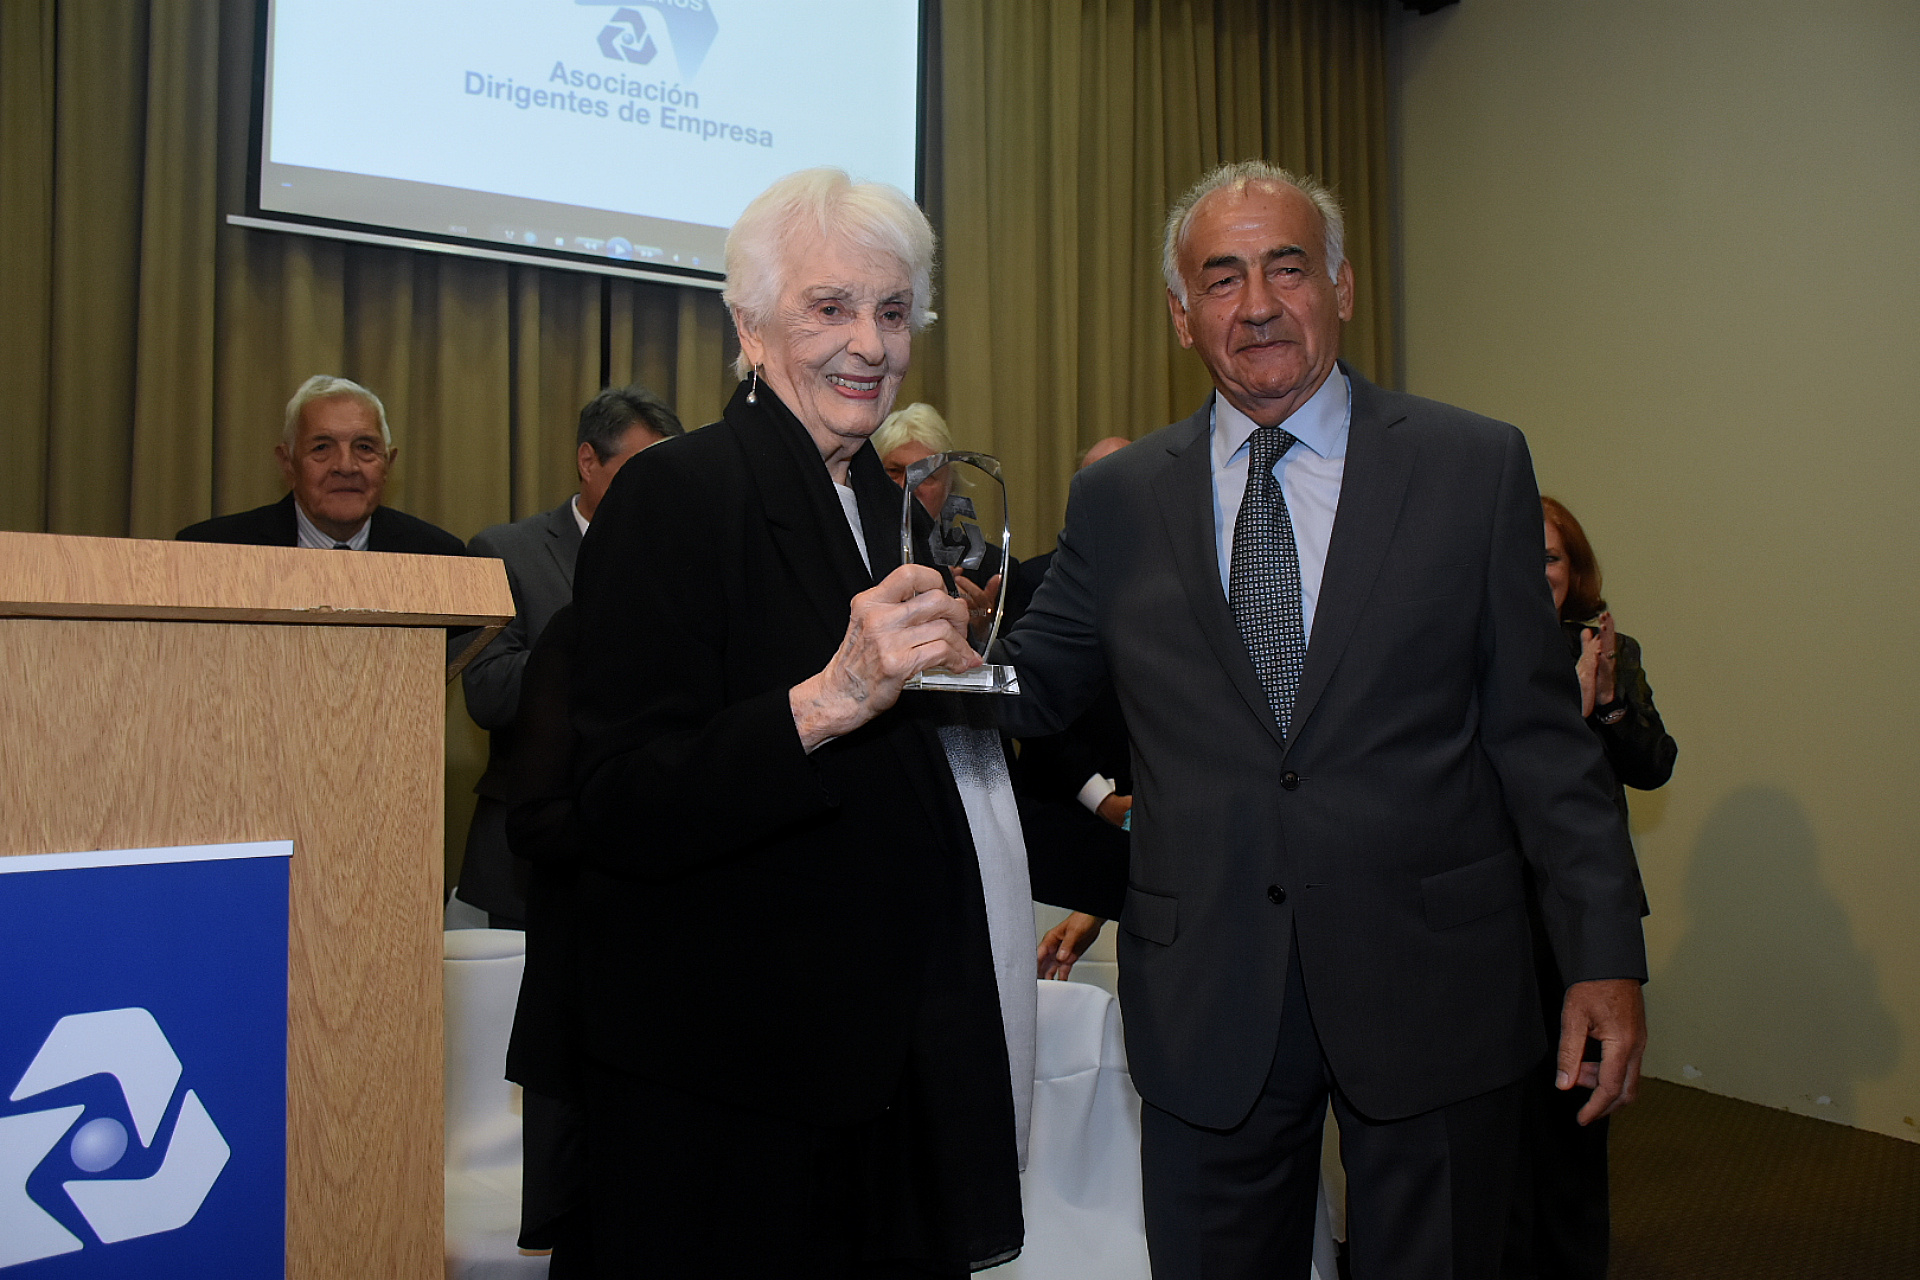 El presidente de ADE, Aizar Antonio Assefh, junto a Graciela Fernández Meijide, quien recibió un reconocimiento especial 
Nicolás Stulberg